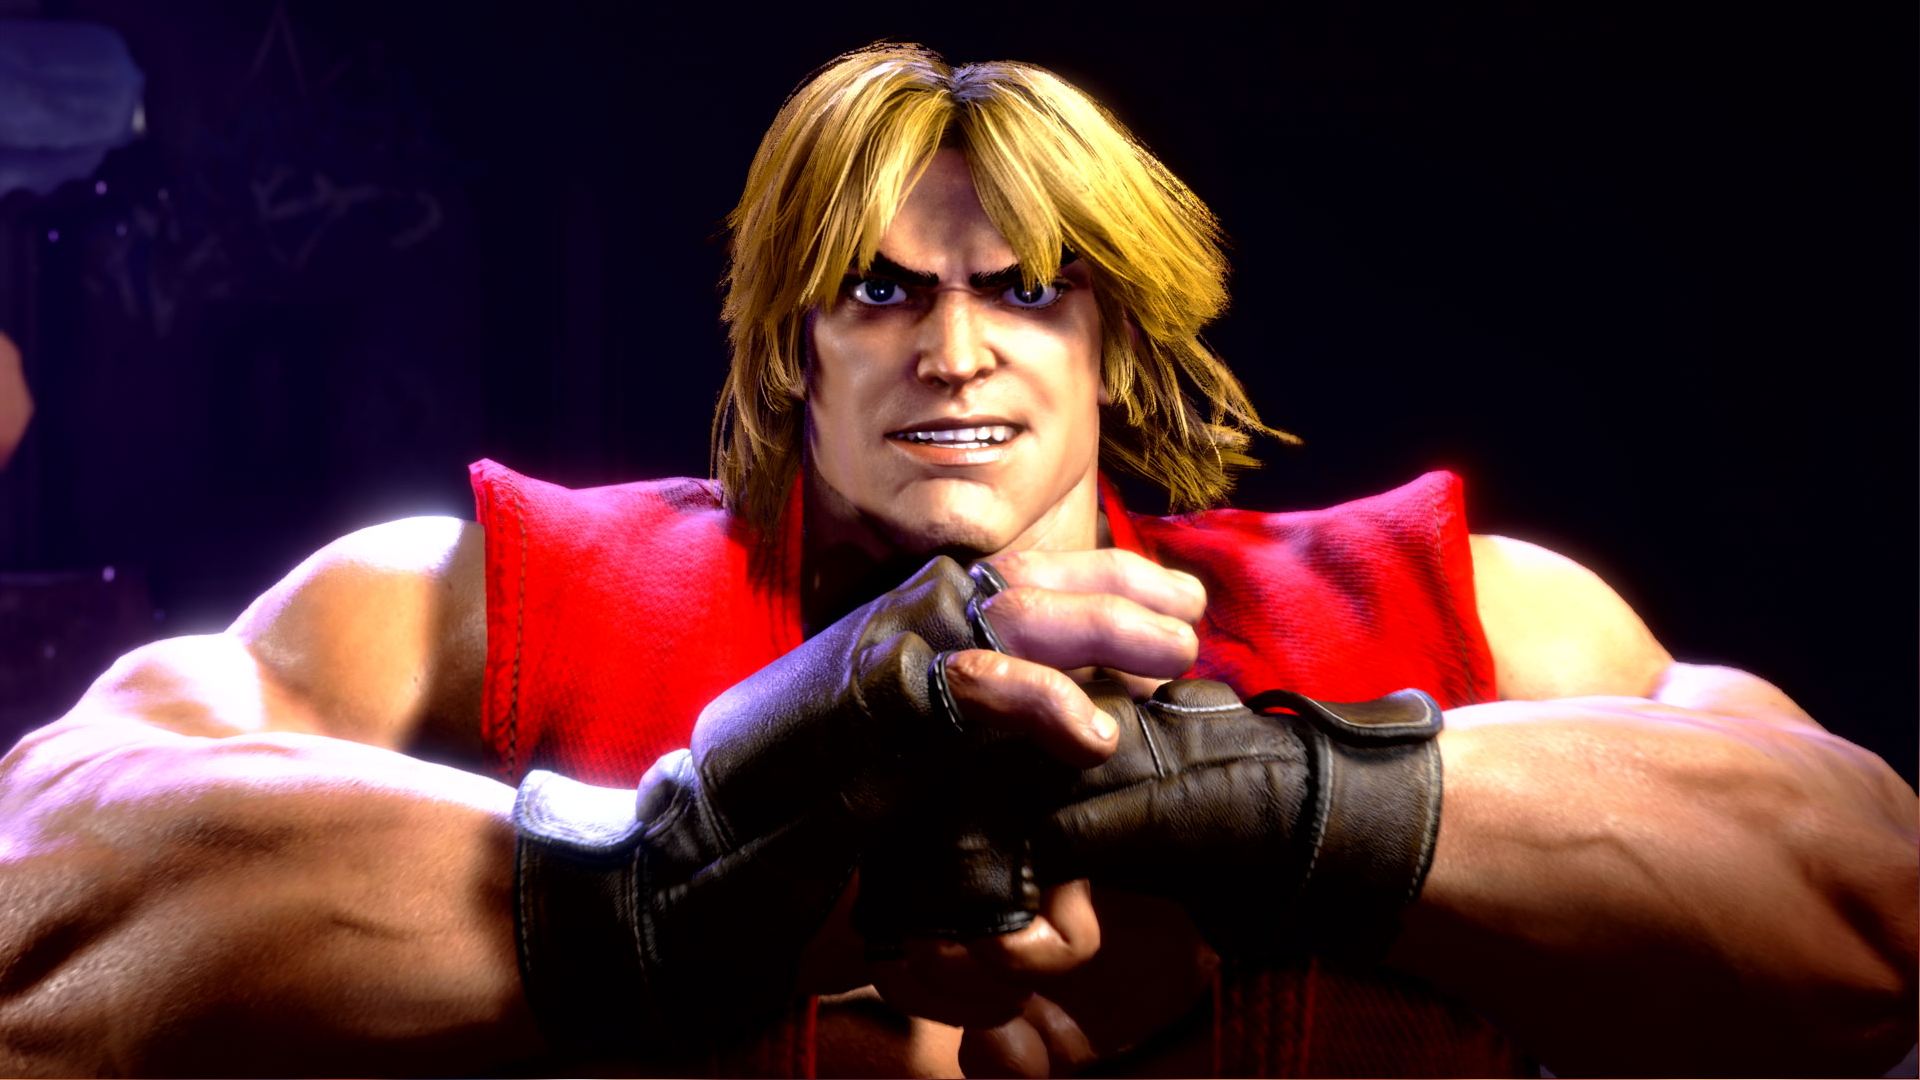 Costume alternativo di Street Fighter 6: si può vedere Kane classico